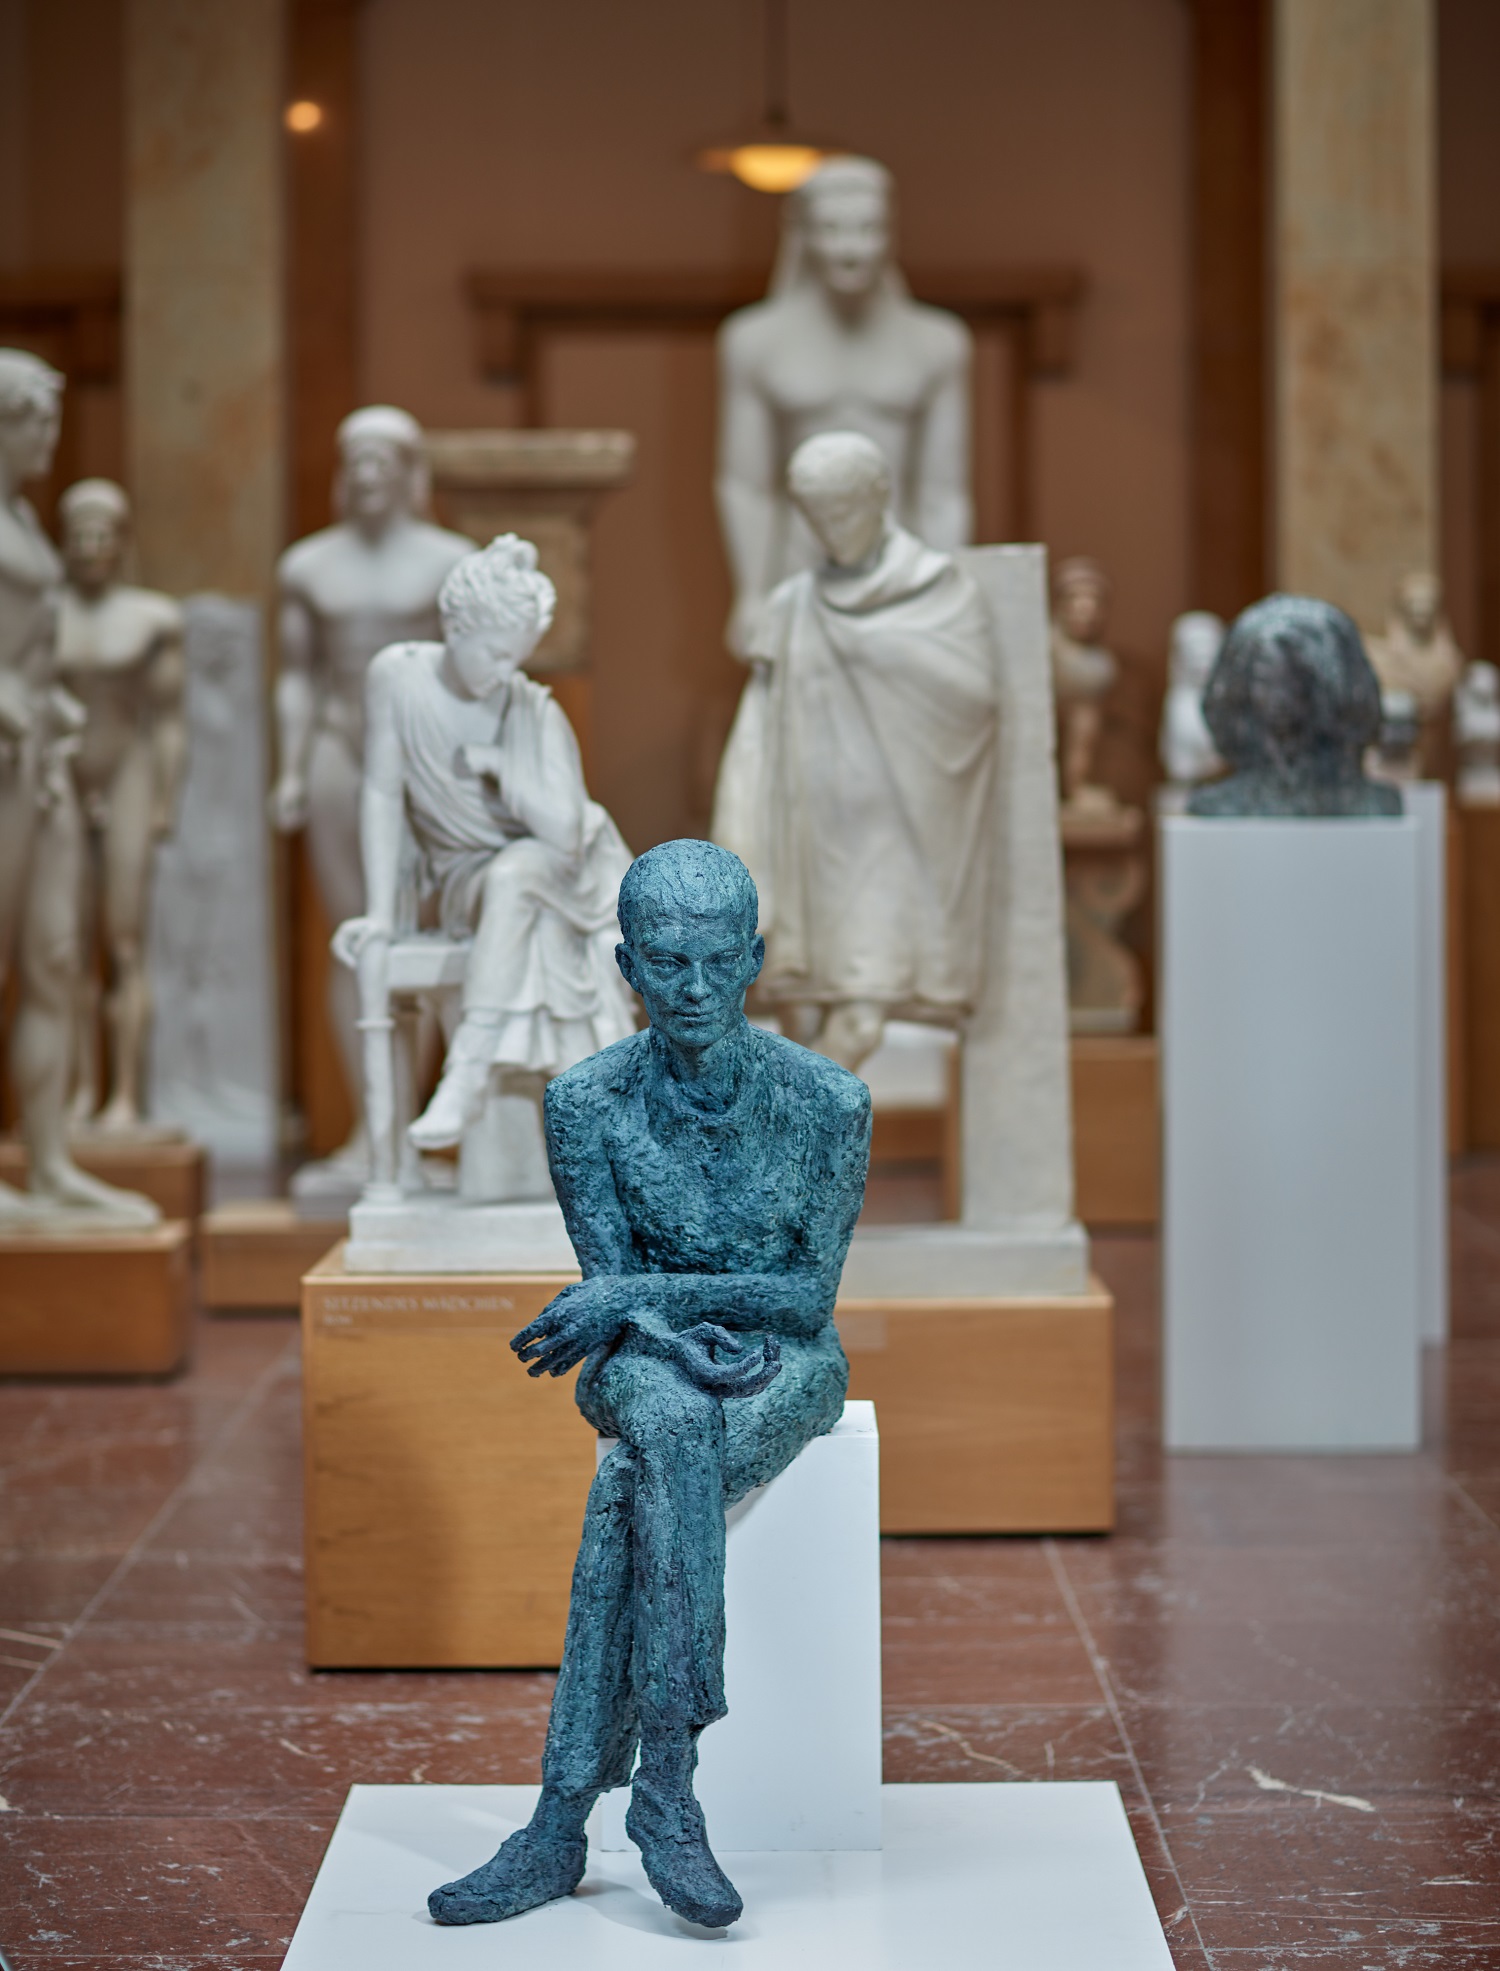 Die Figur eines jungen Mannes aus Wachs sitzt mit überschlagenen Beinen nach vorne gebeugt auf einem Sockel in den Museumsräumen.